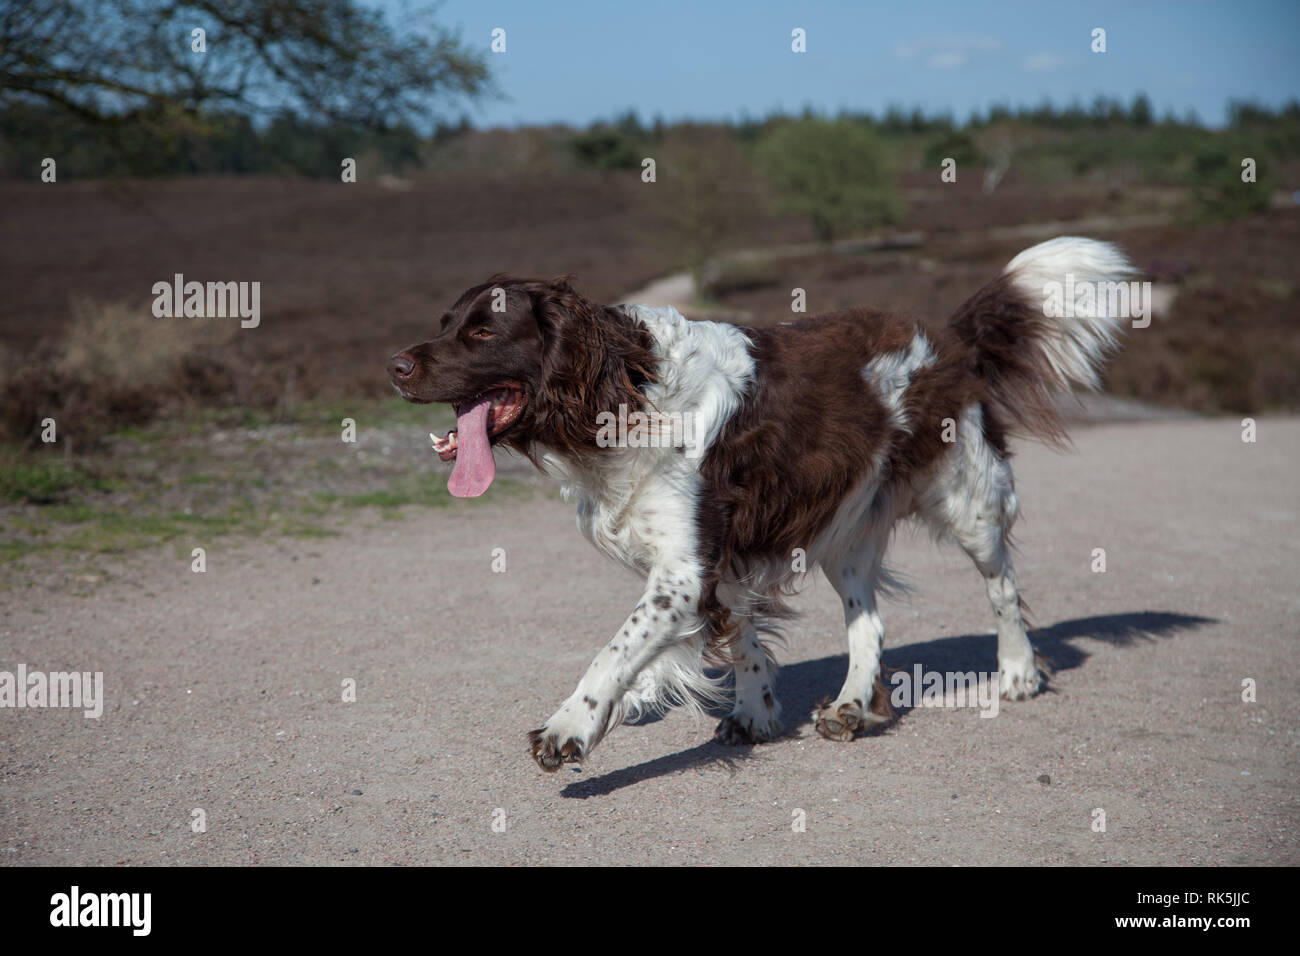 Kleine munster lander Hund walink mit seiner Tong aus seinem Mund  Stockfotografie - Alamy